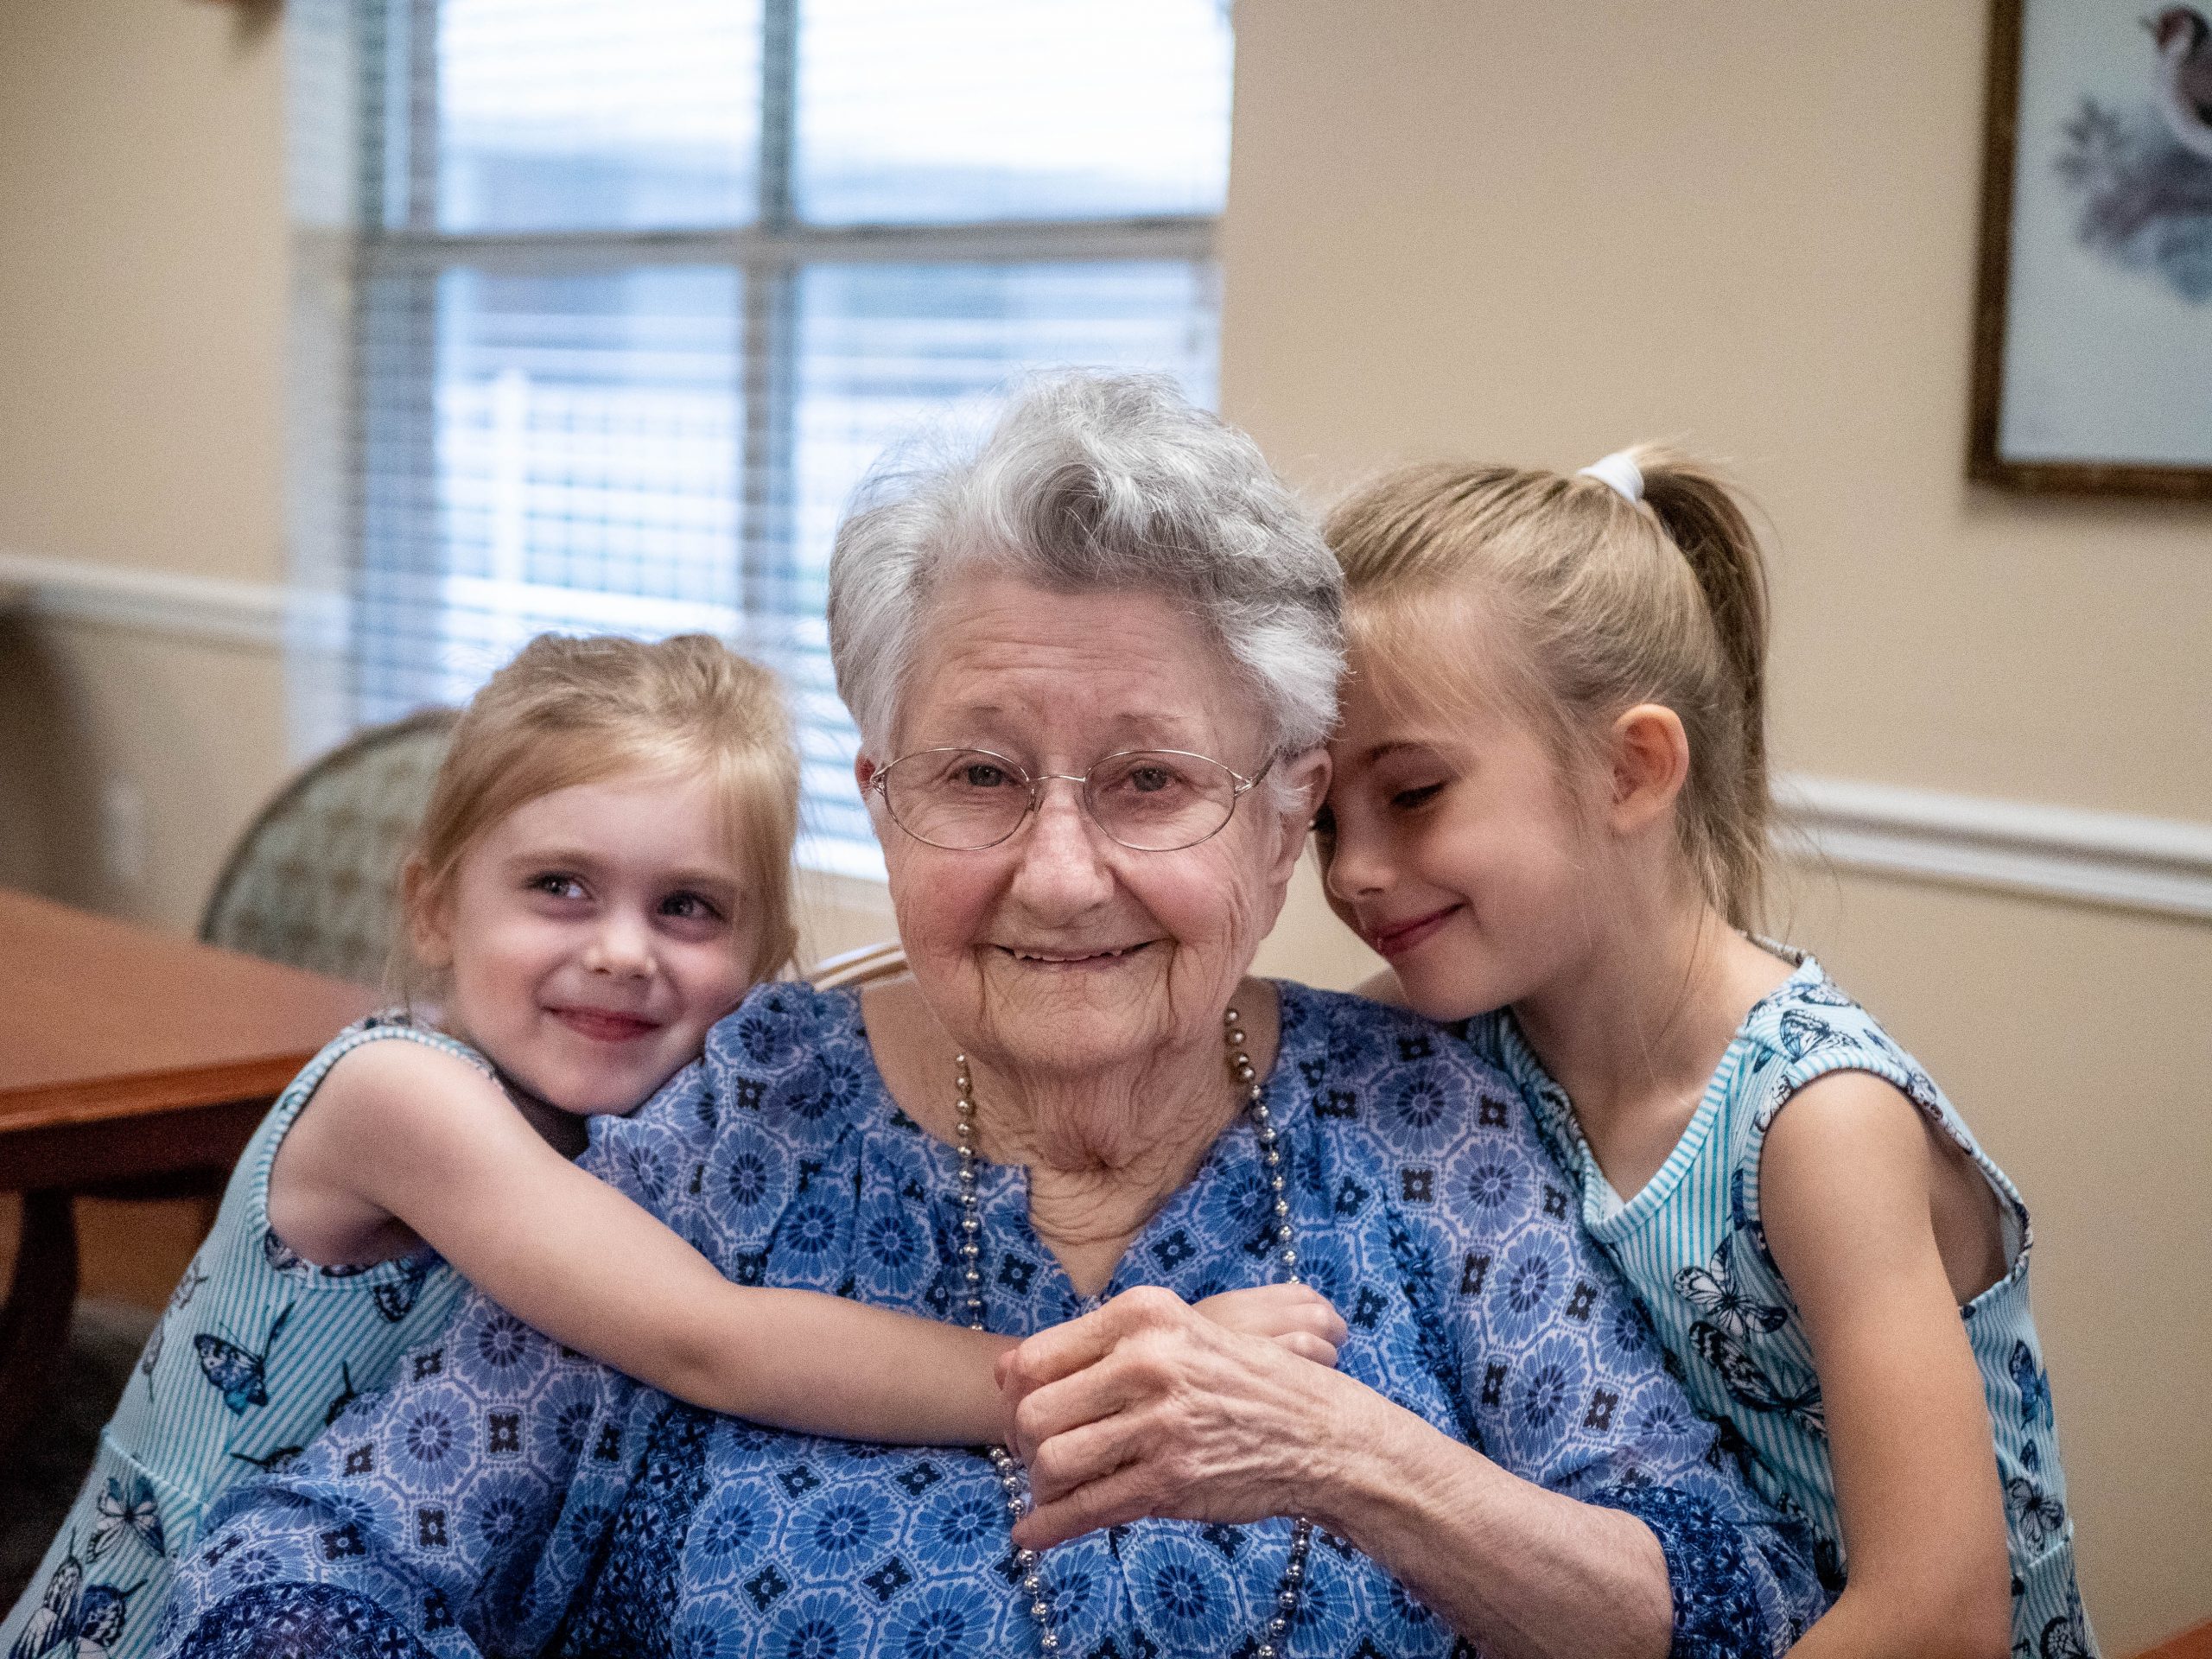 Elderly Woman With Children